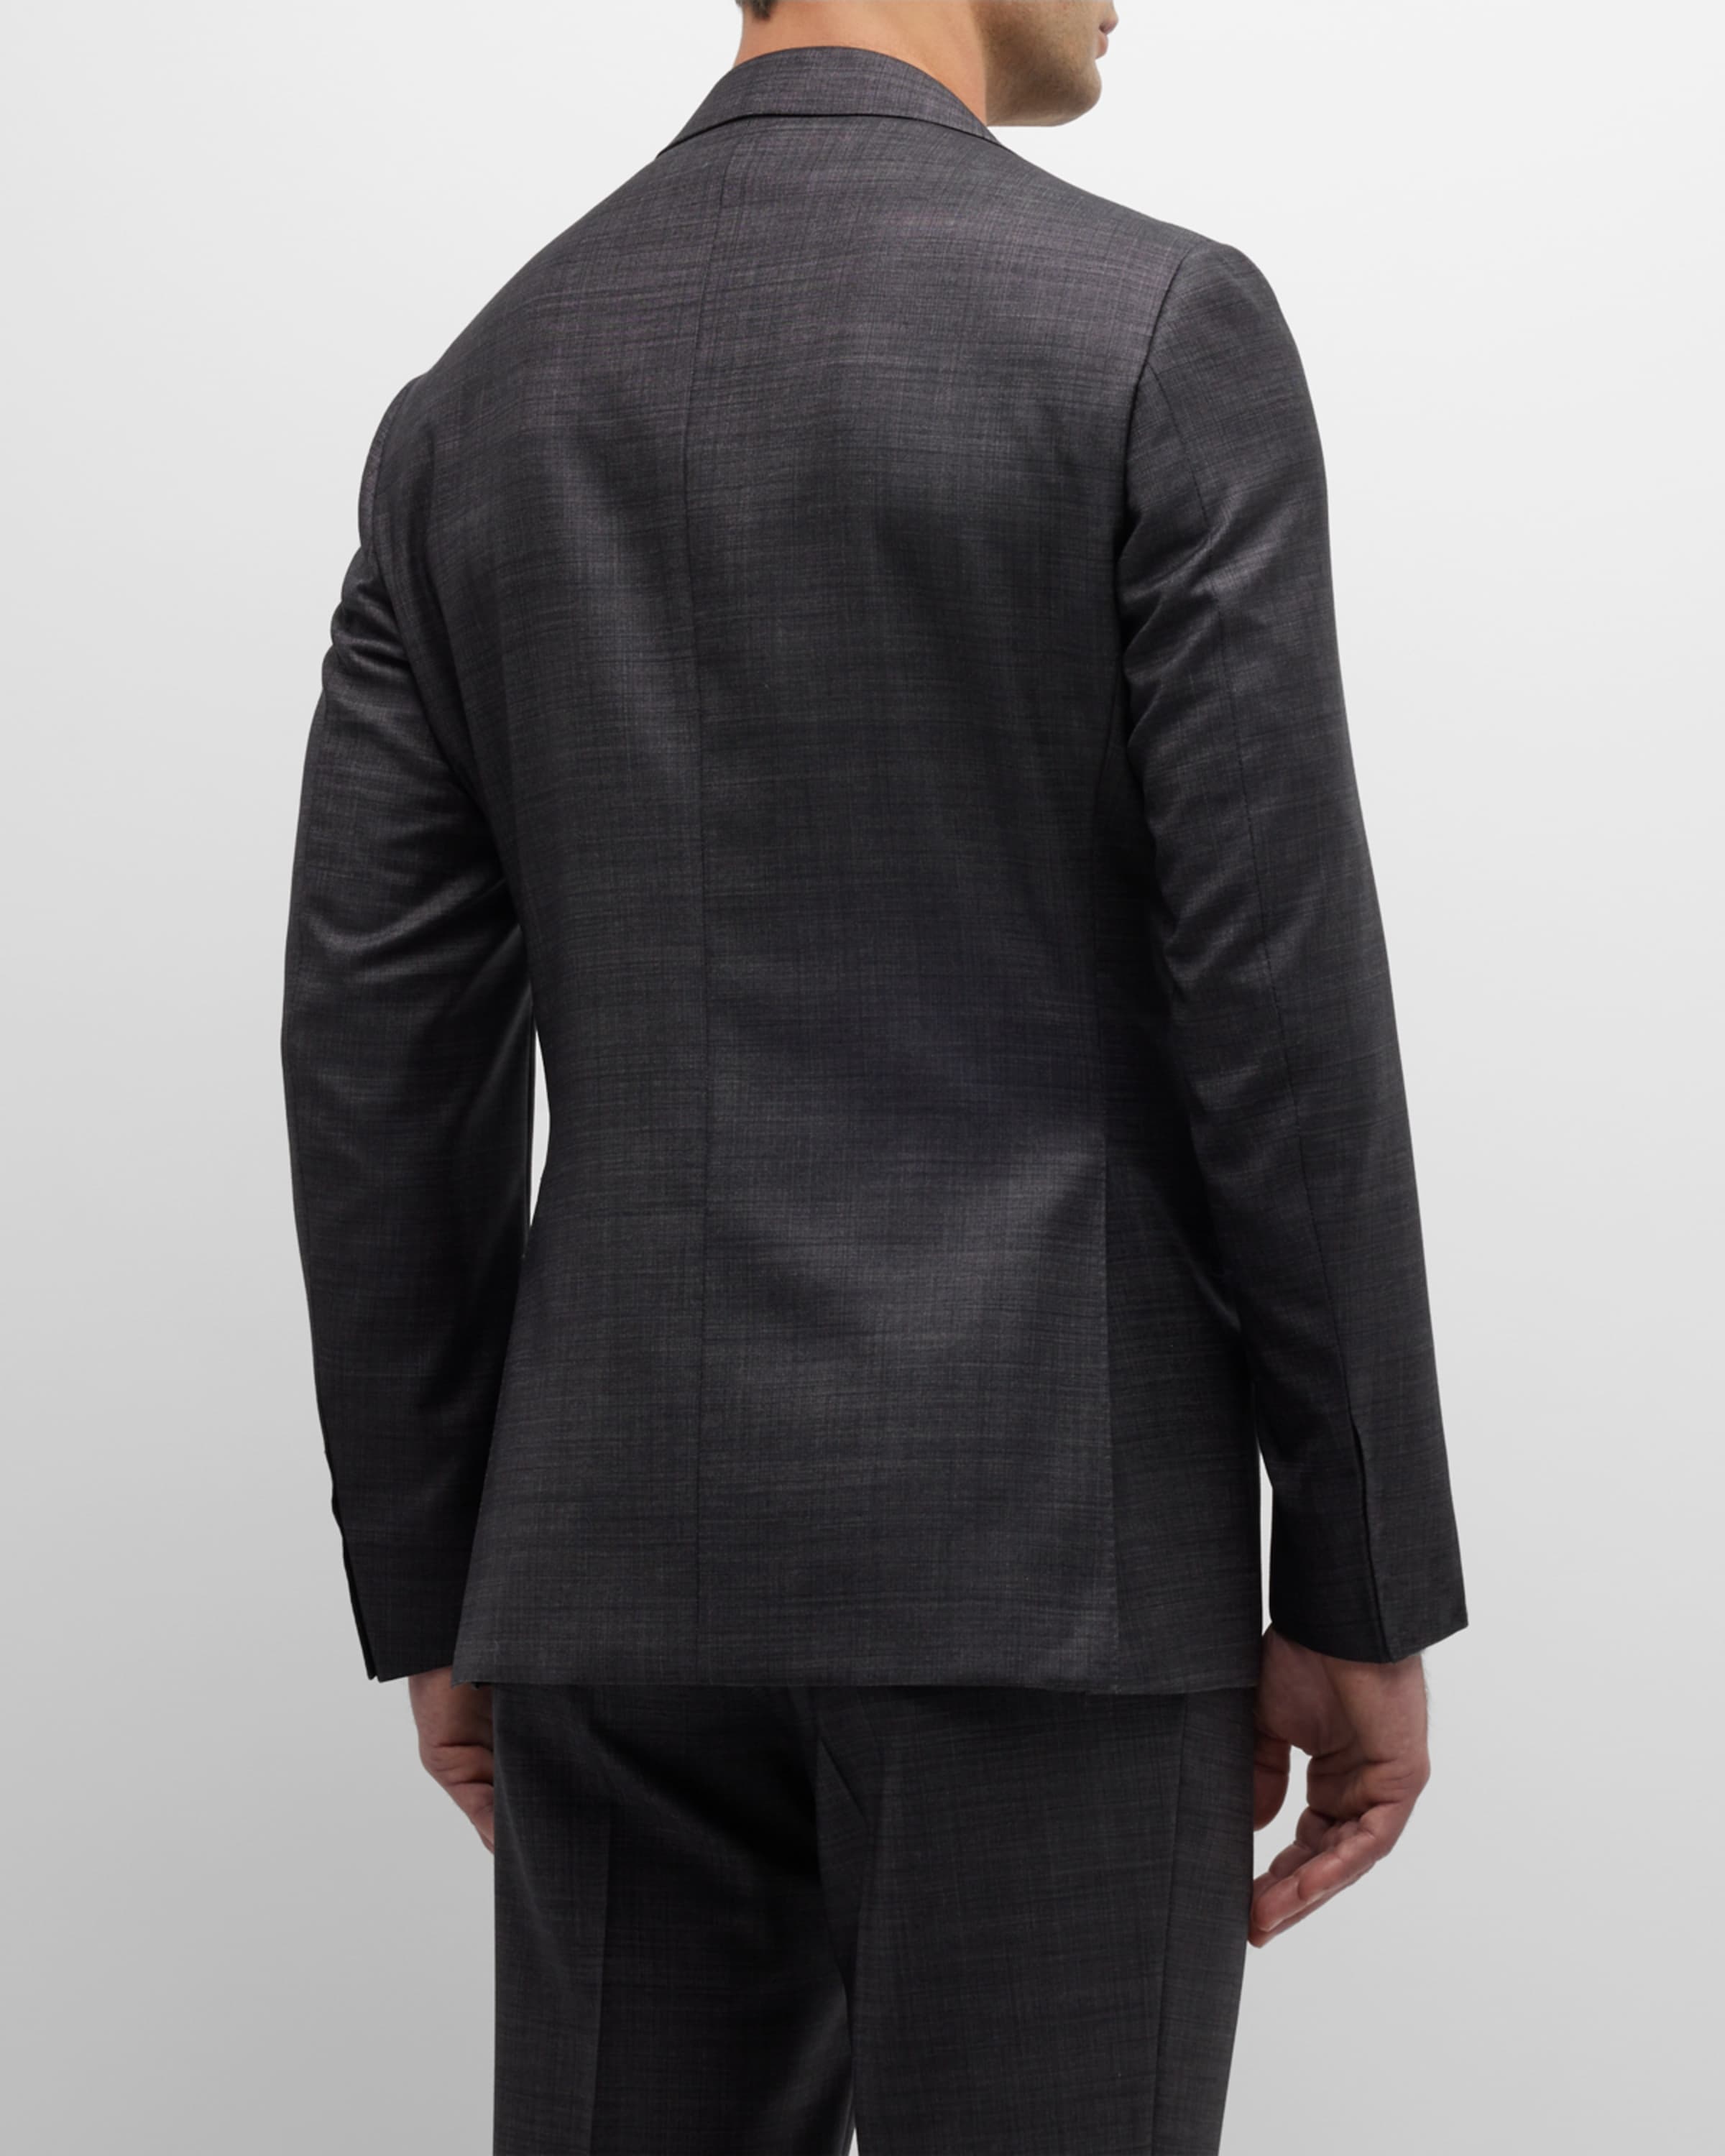 Men's Solid Wool Tic Suit - 5